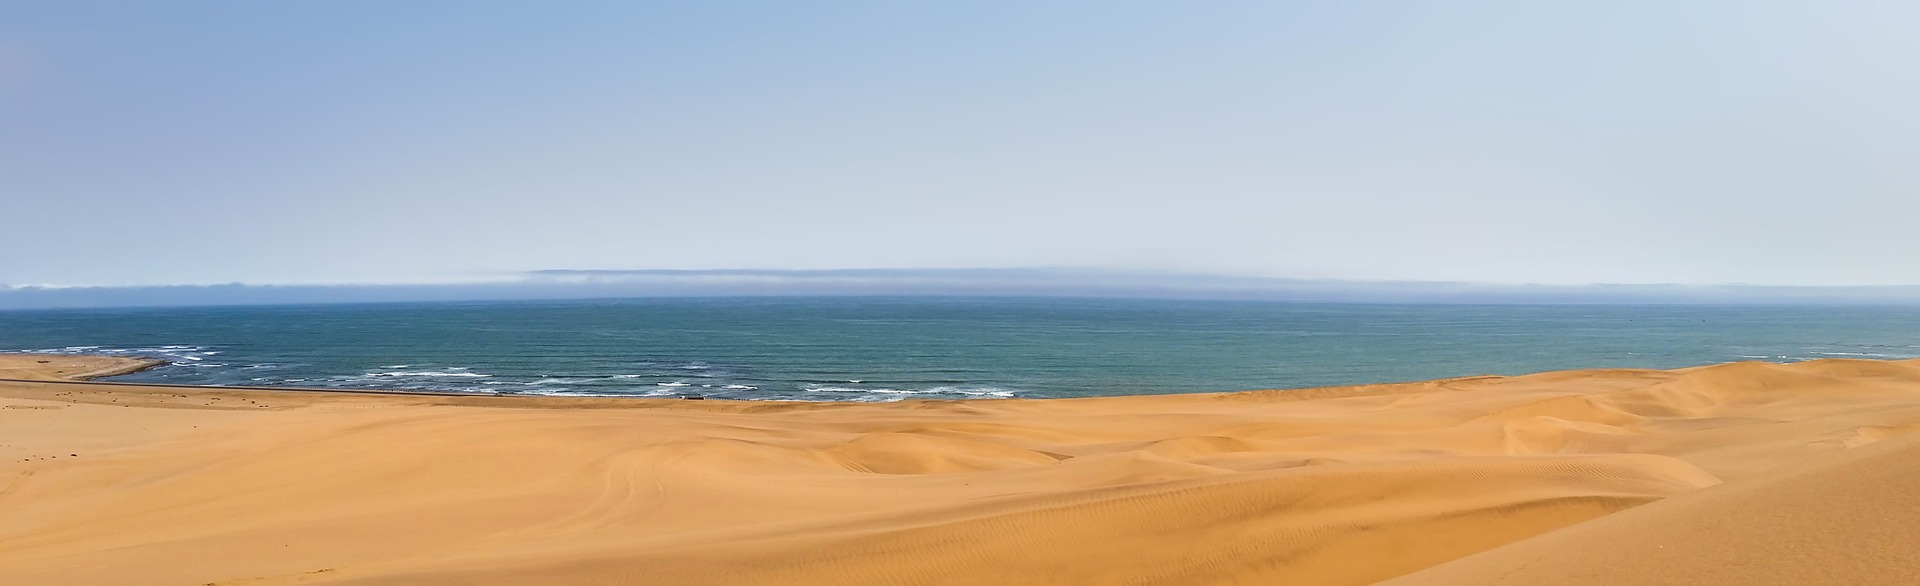 Namibia Wüste und Meer